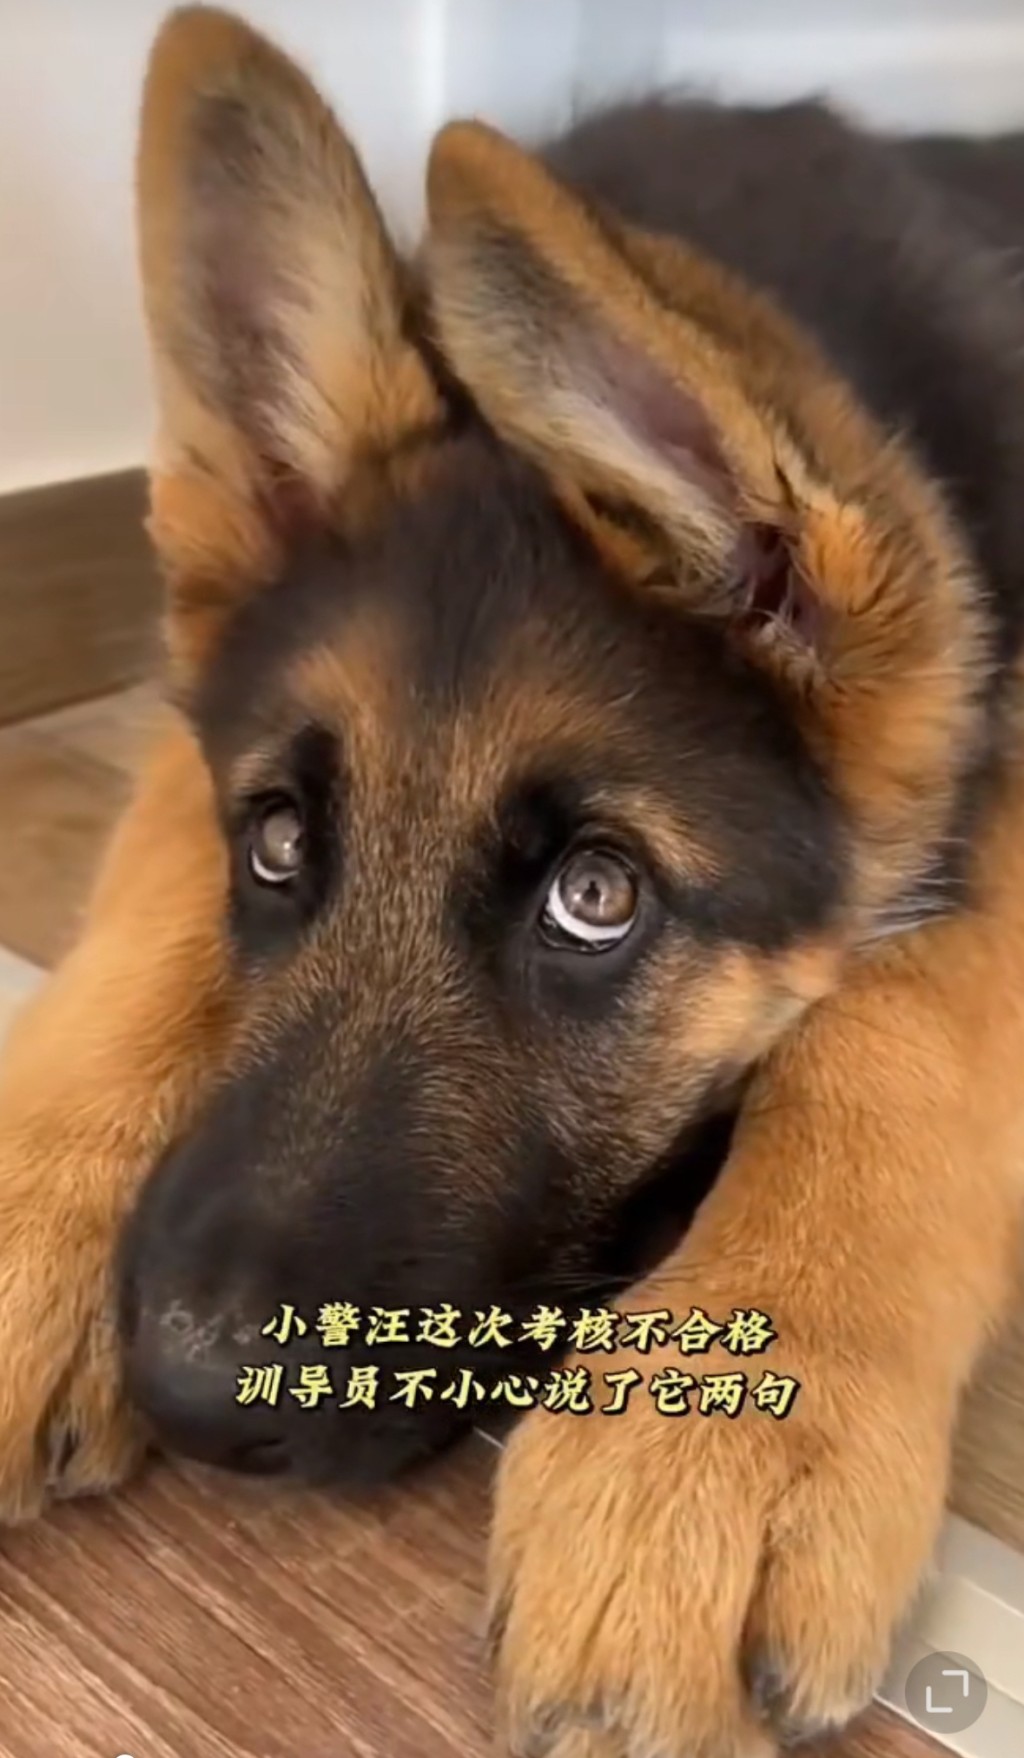 警犬因为考试失败而一脸委屈的样子，软化无数网民。